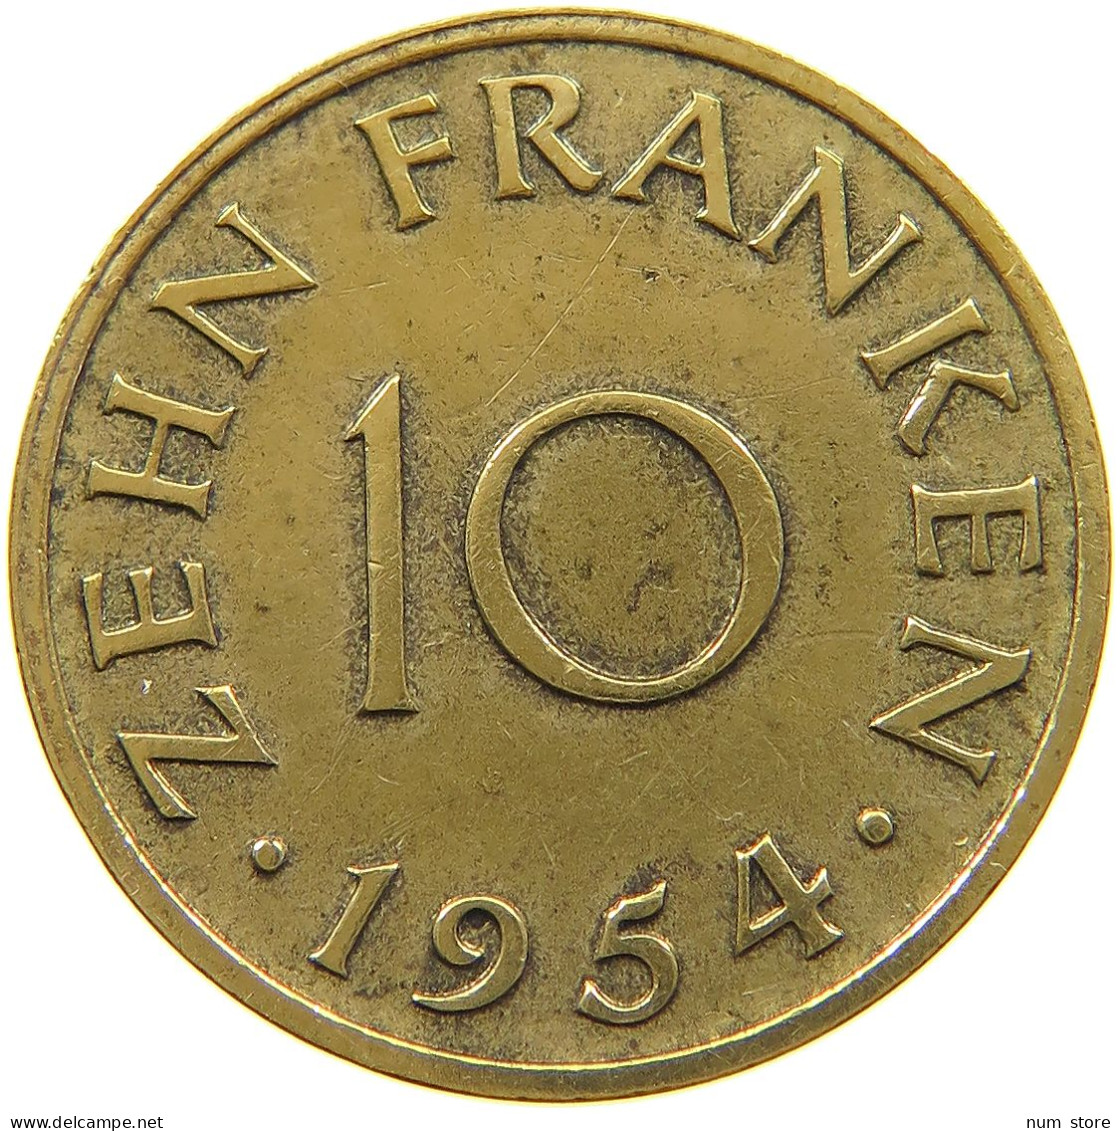 GERMANY WEST 10 FRANKEN 1954 SAARLAND #a021 0149 - 10 Franchi